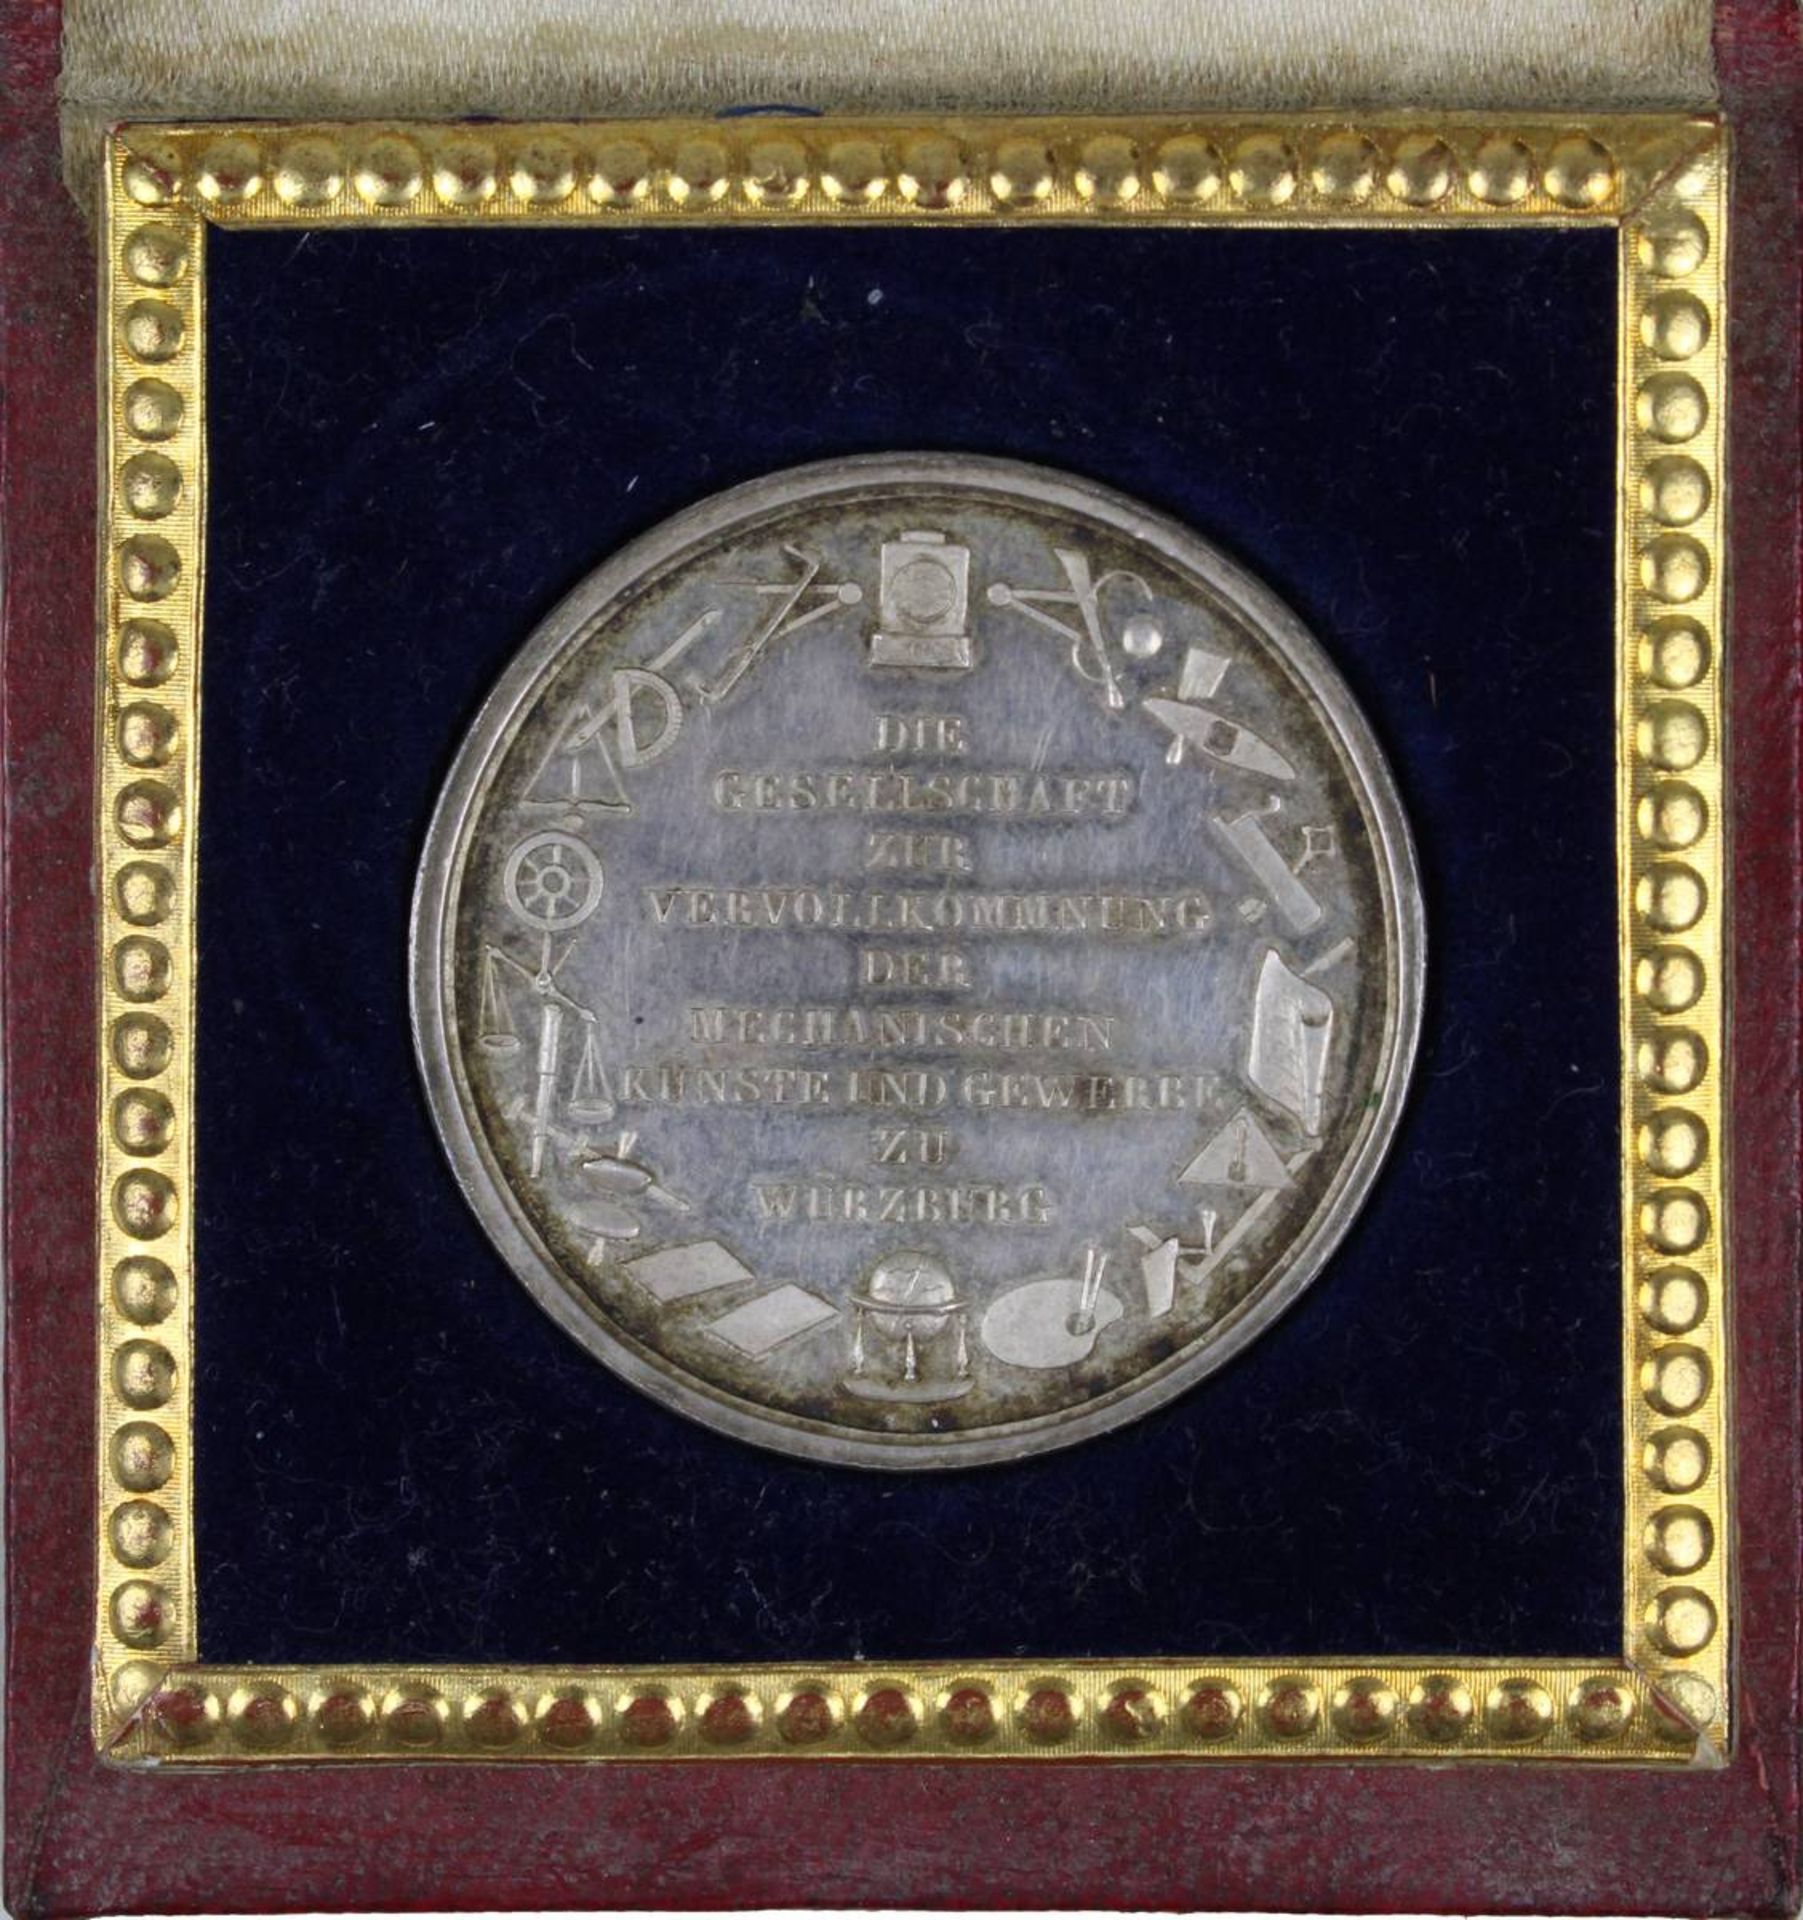 Würzburg Silbermedaille um 1857, Fleißprämie der Gesellschaft zur Vervollkommnung der mechanischen